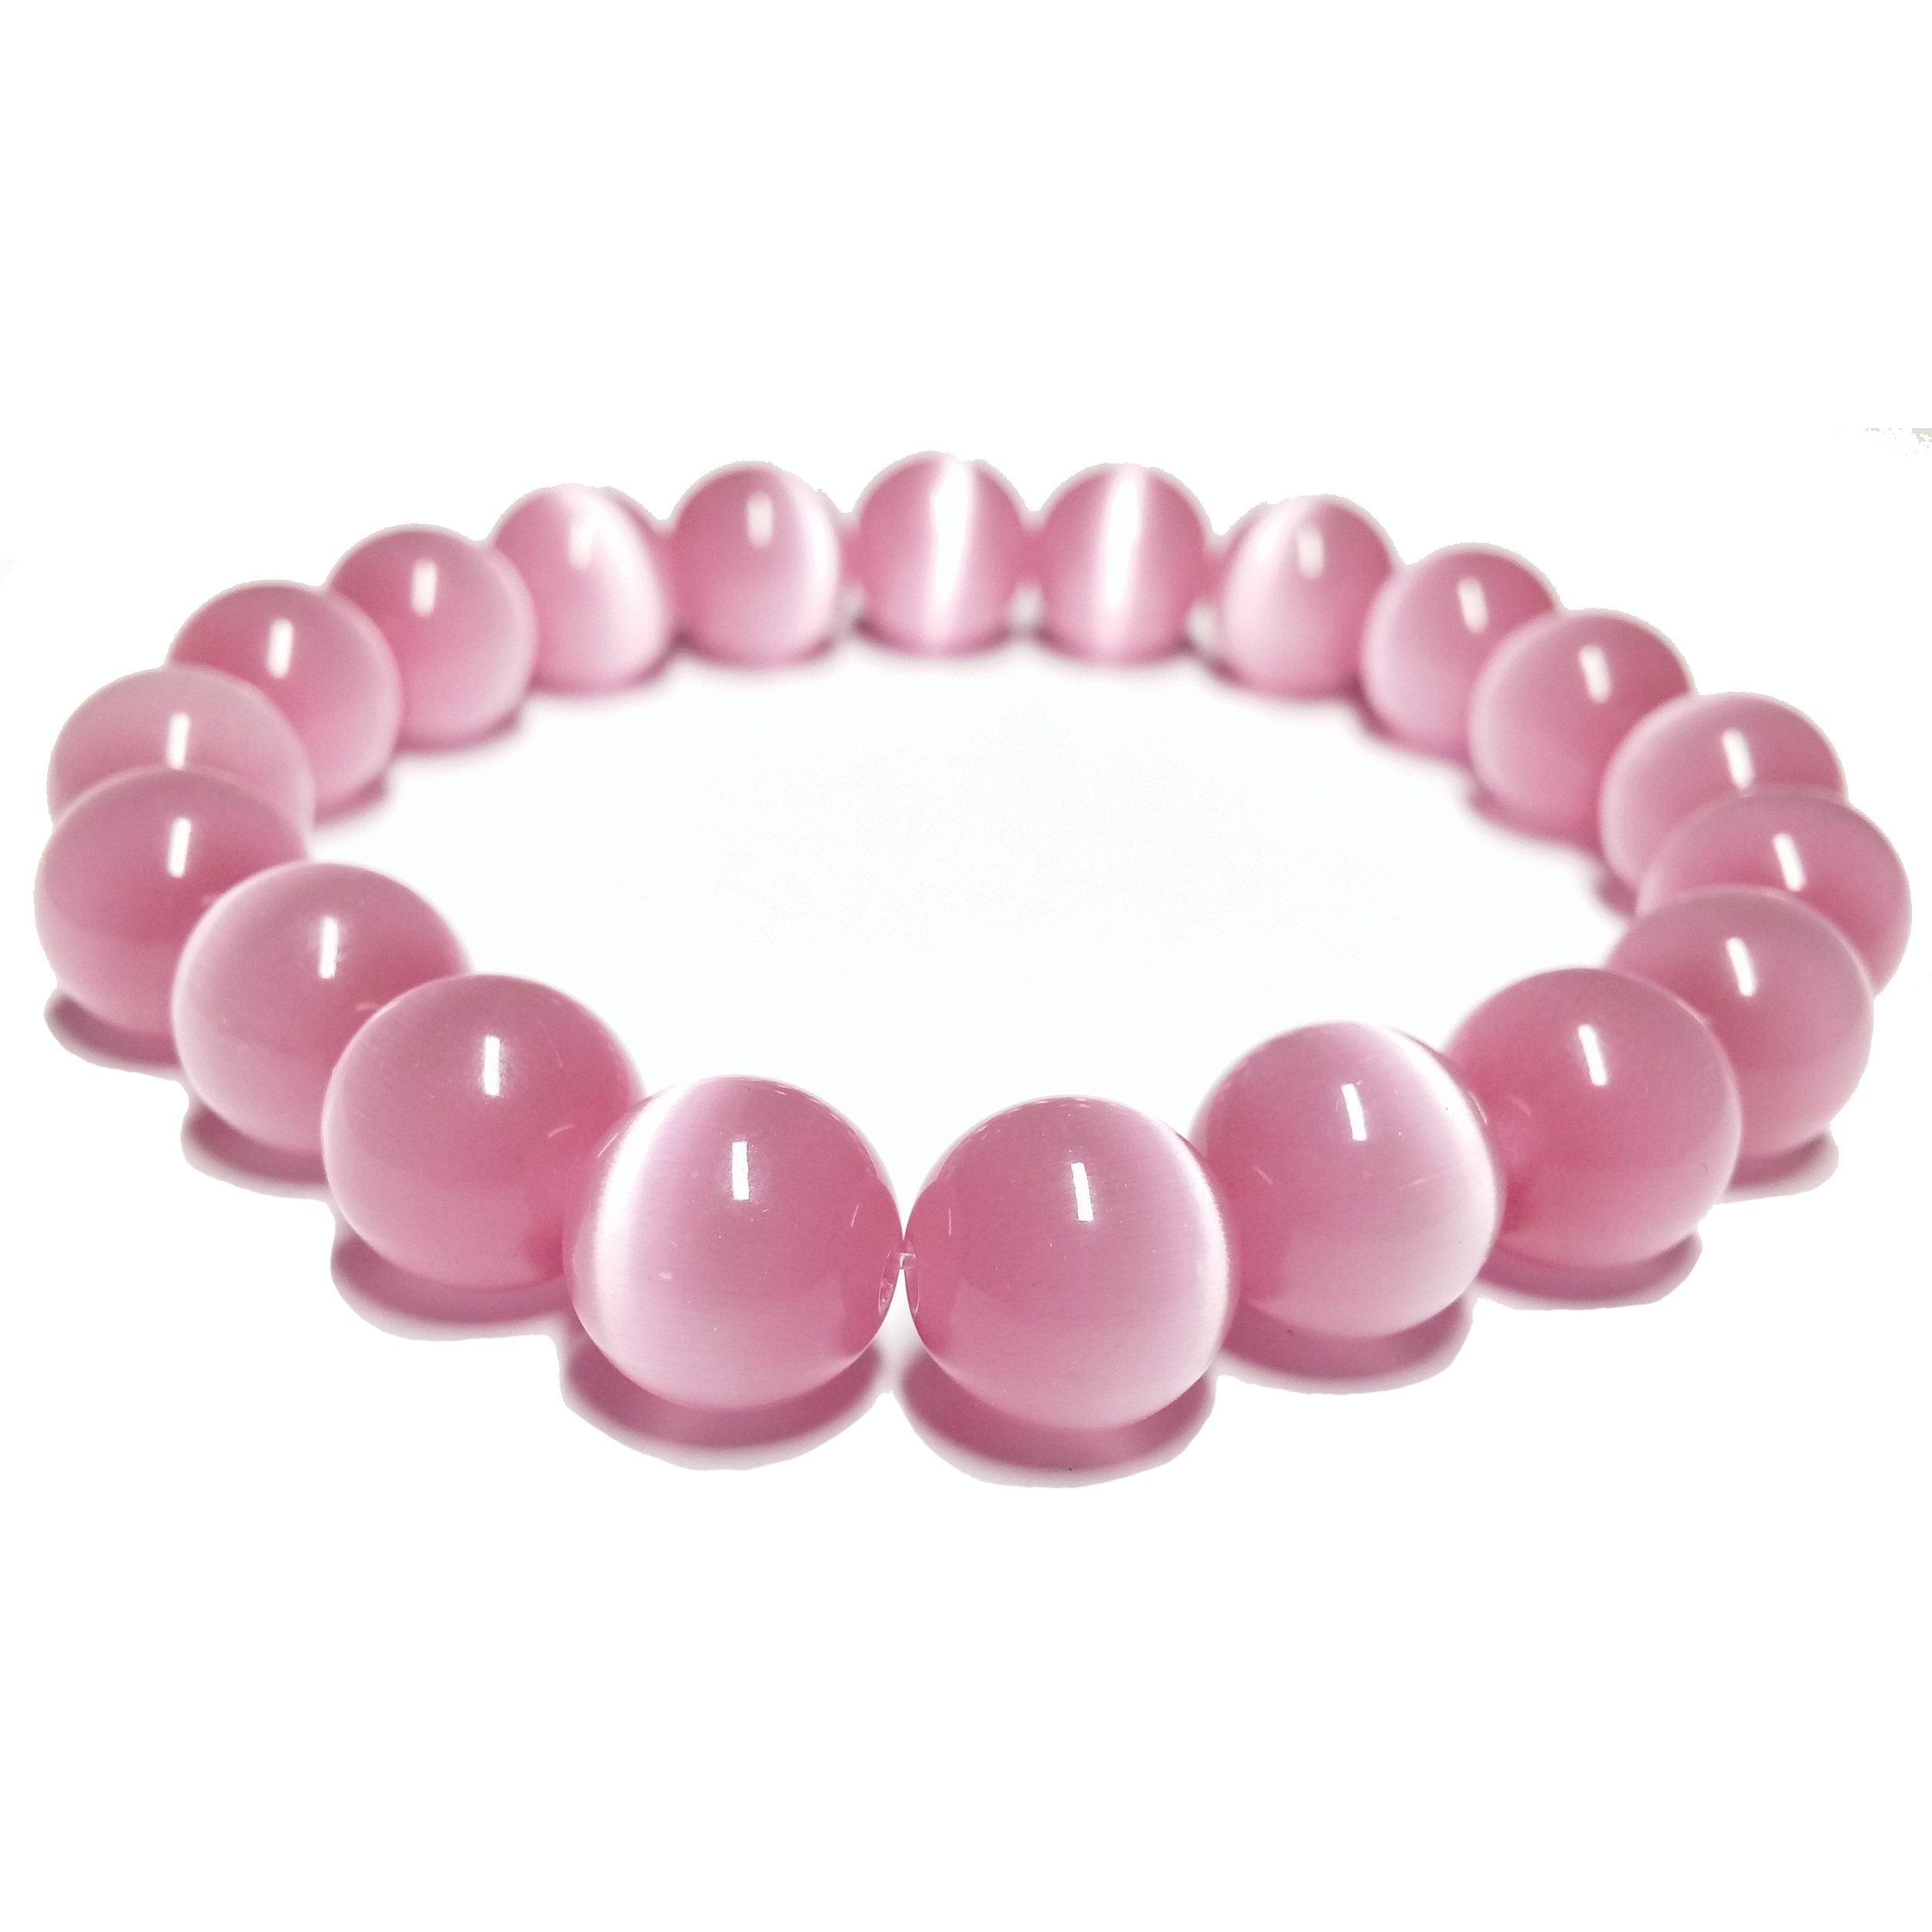 Bracelet pierre rose bande blanche 10mm